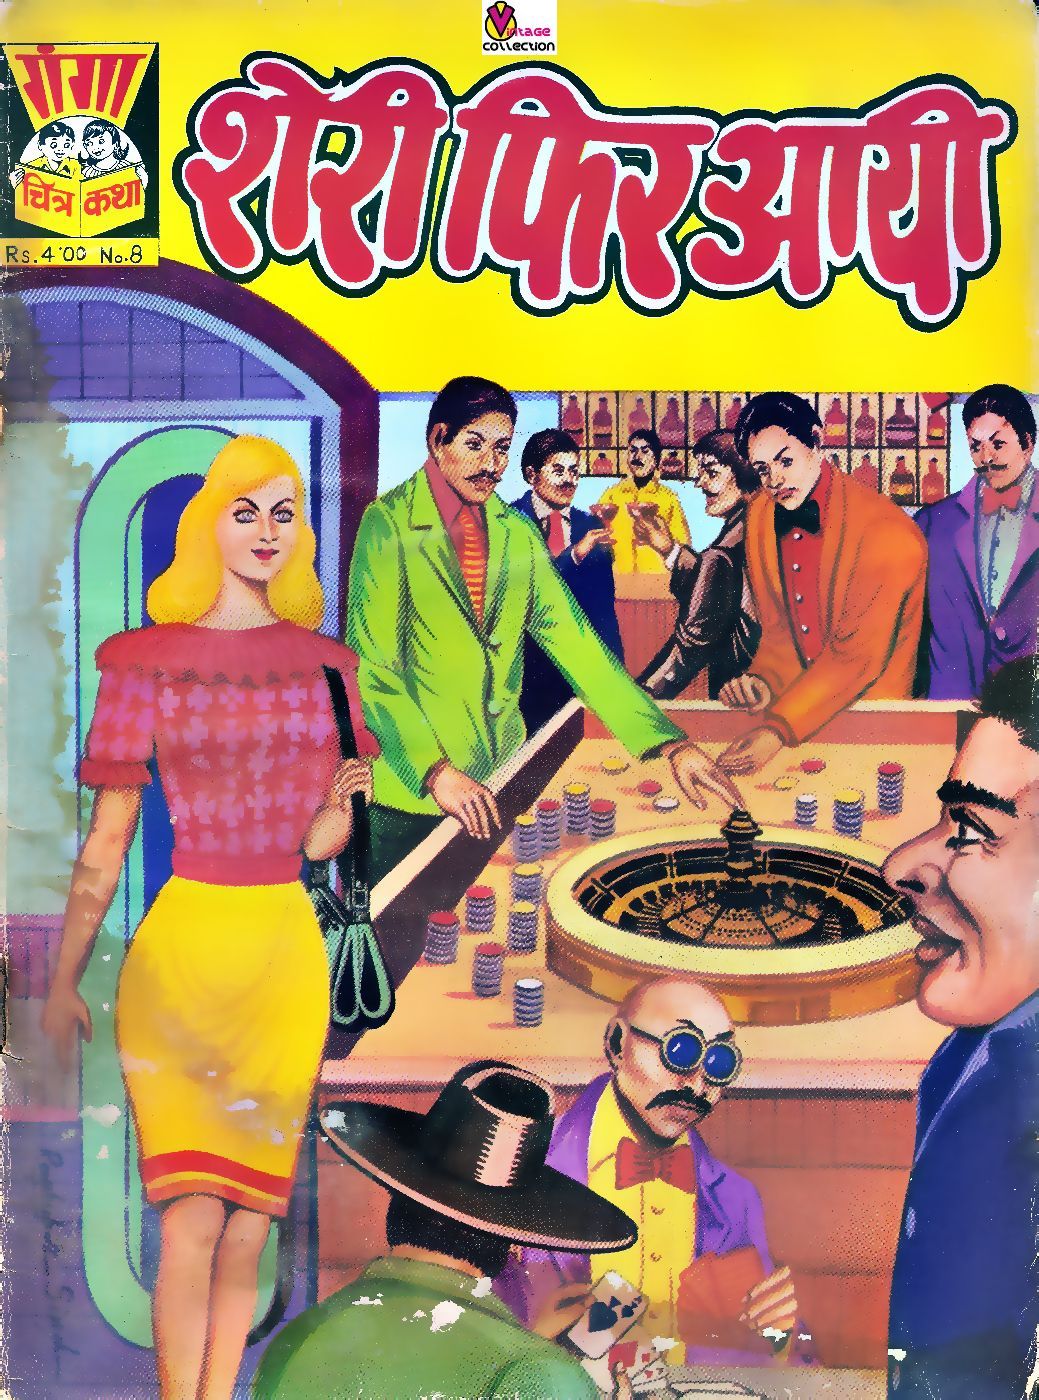 Savita bhabi comic book pdf in hindi download